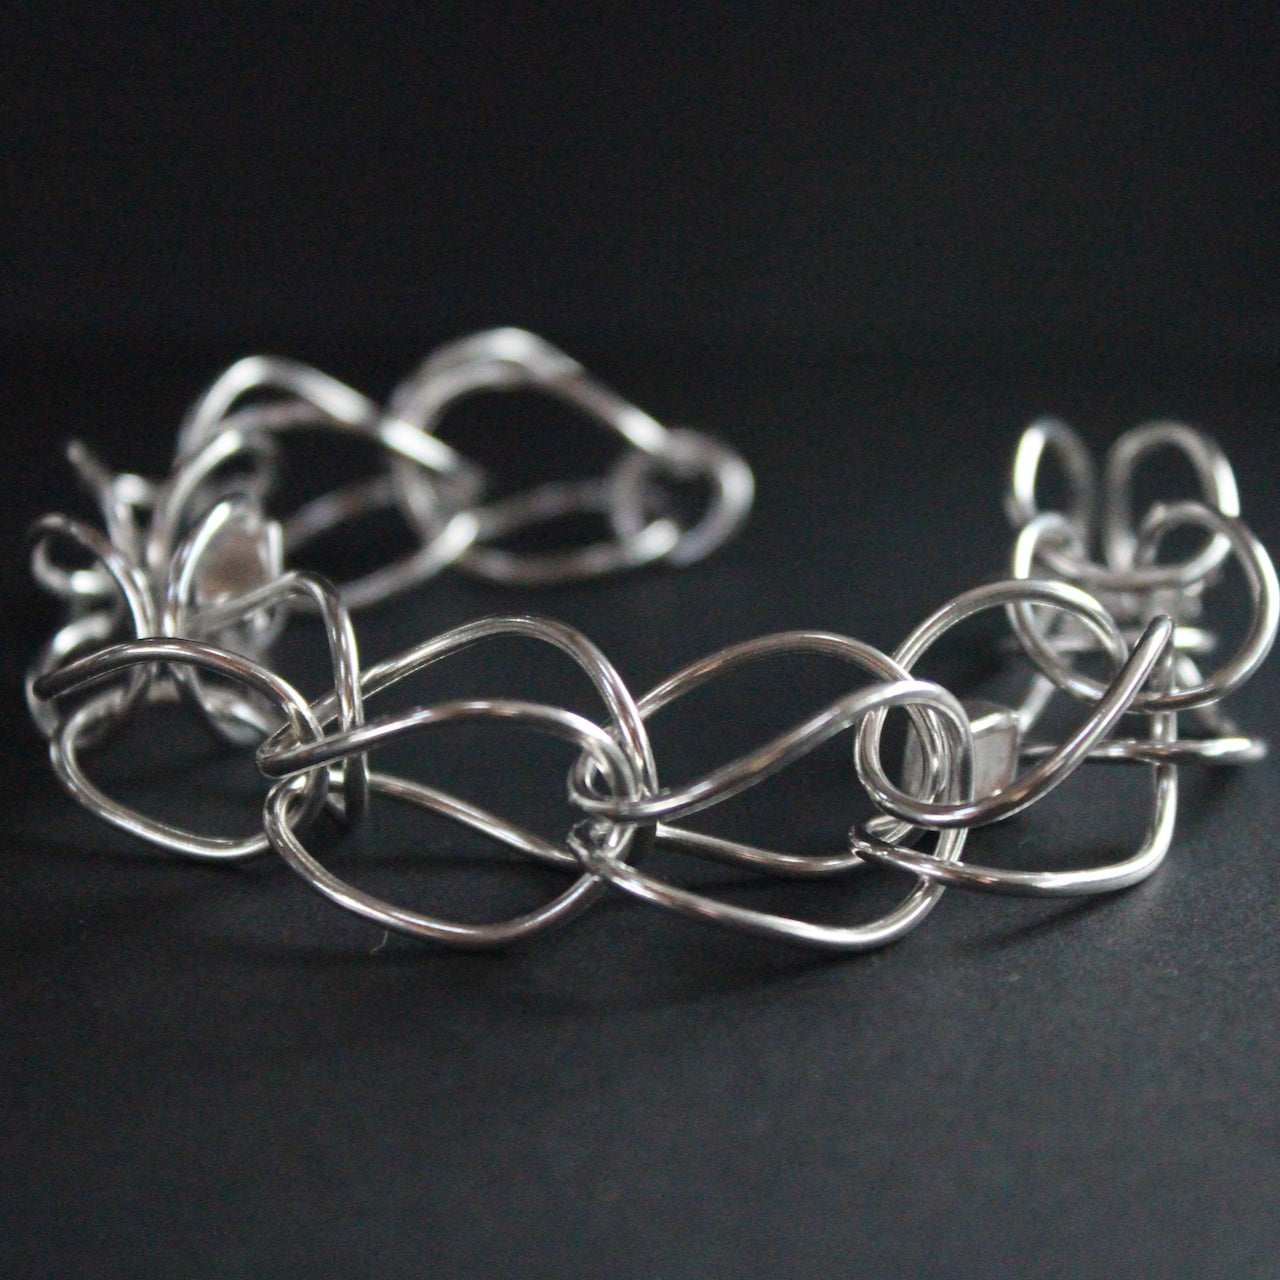 Sterling silver loop in loop chain bracelet by artist Amy Stringer